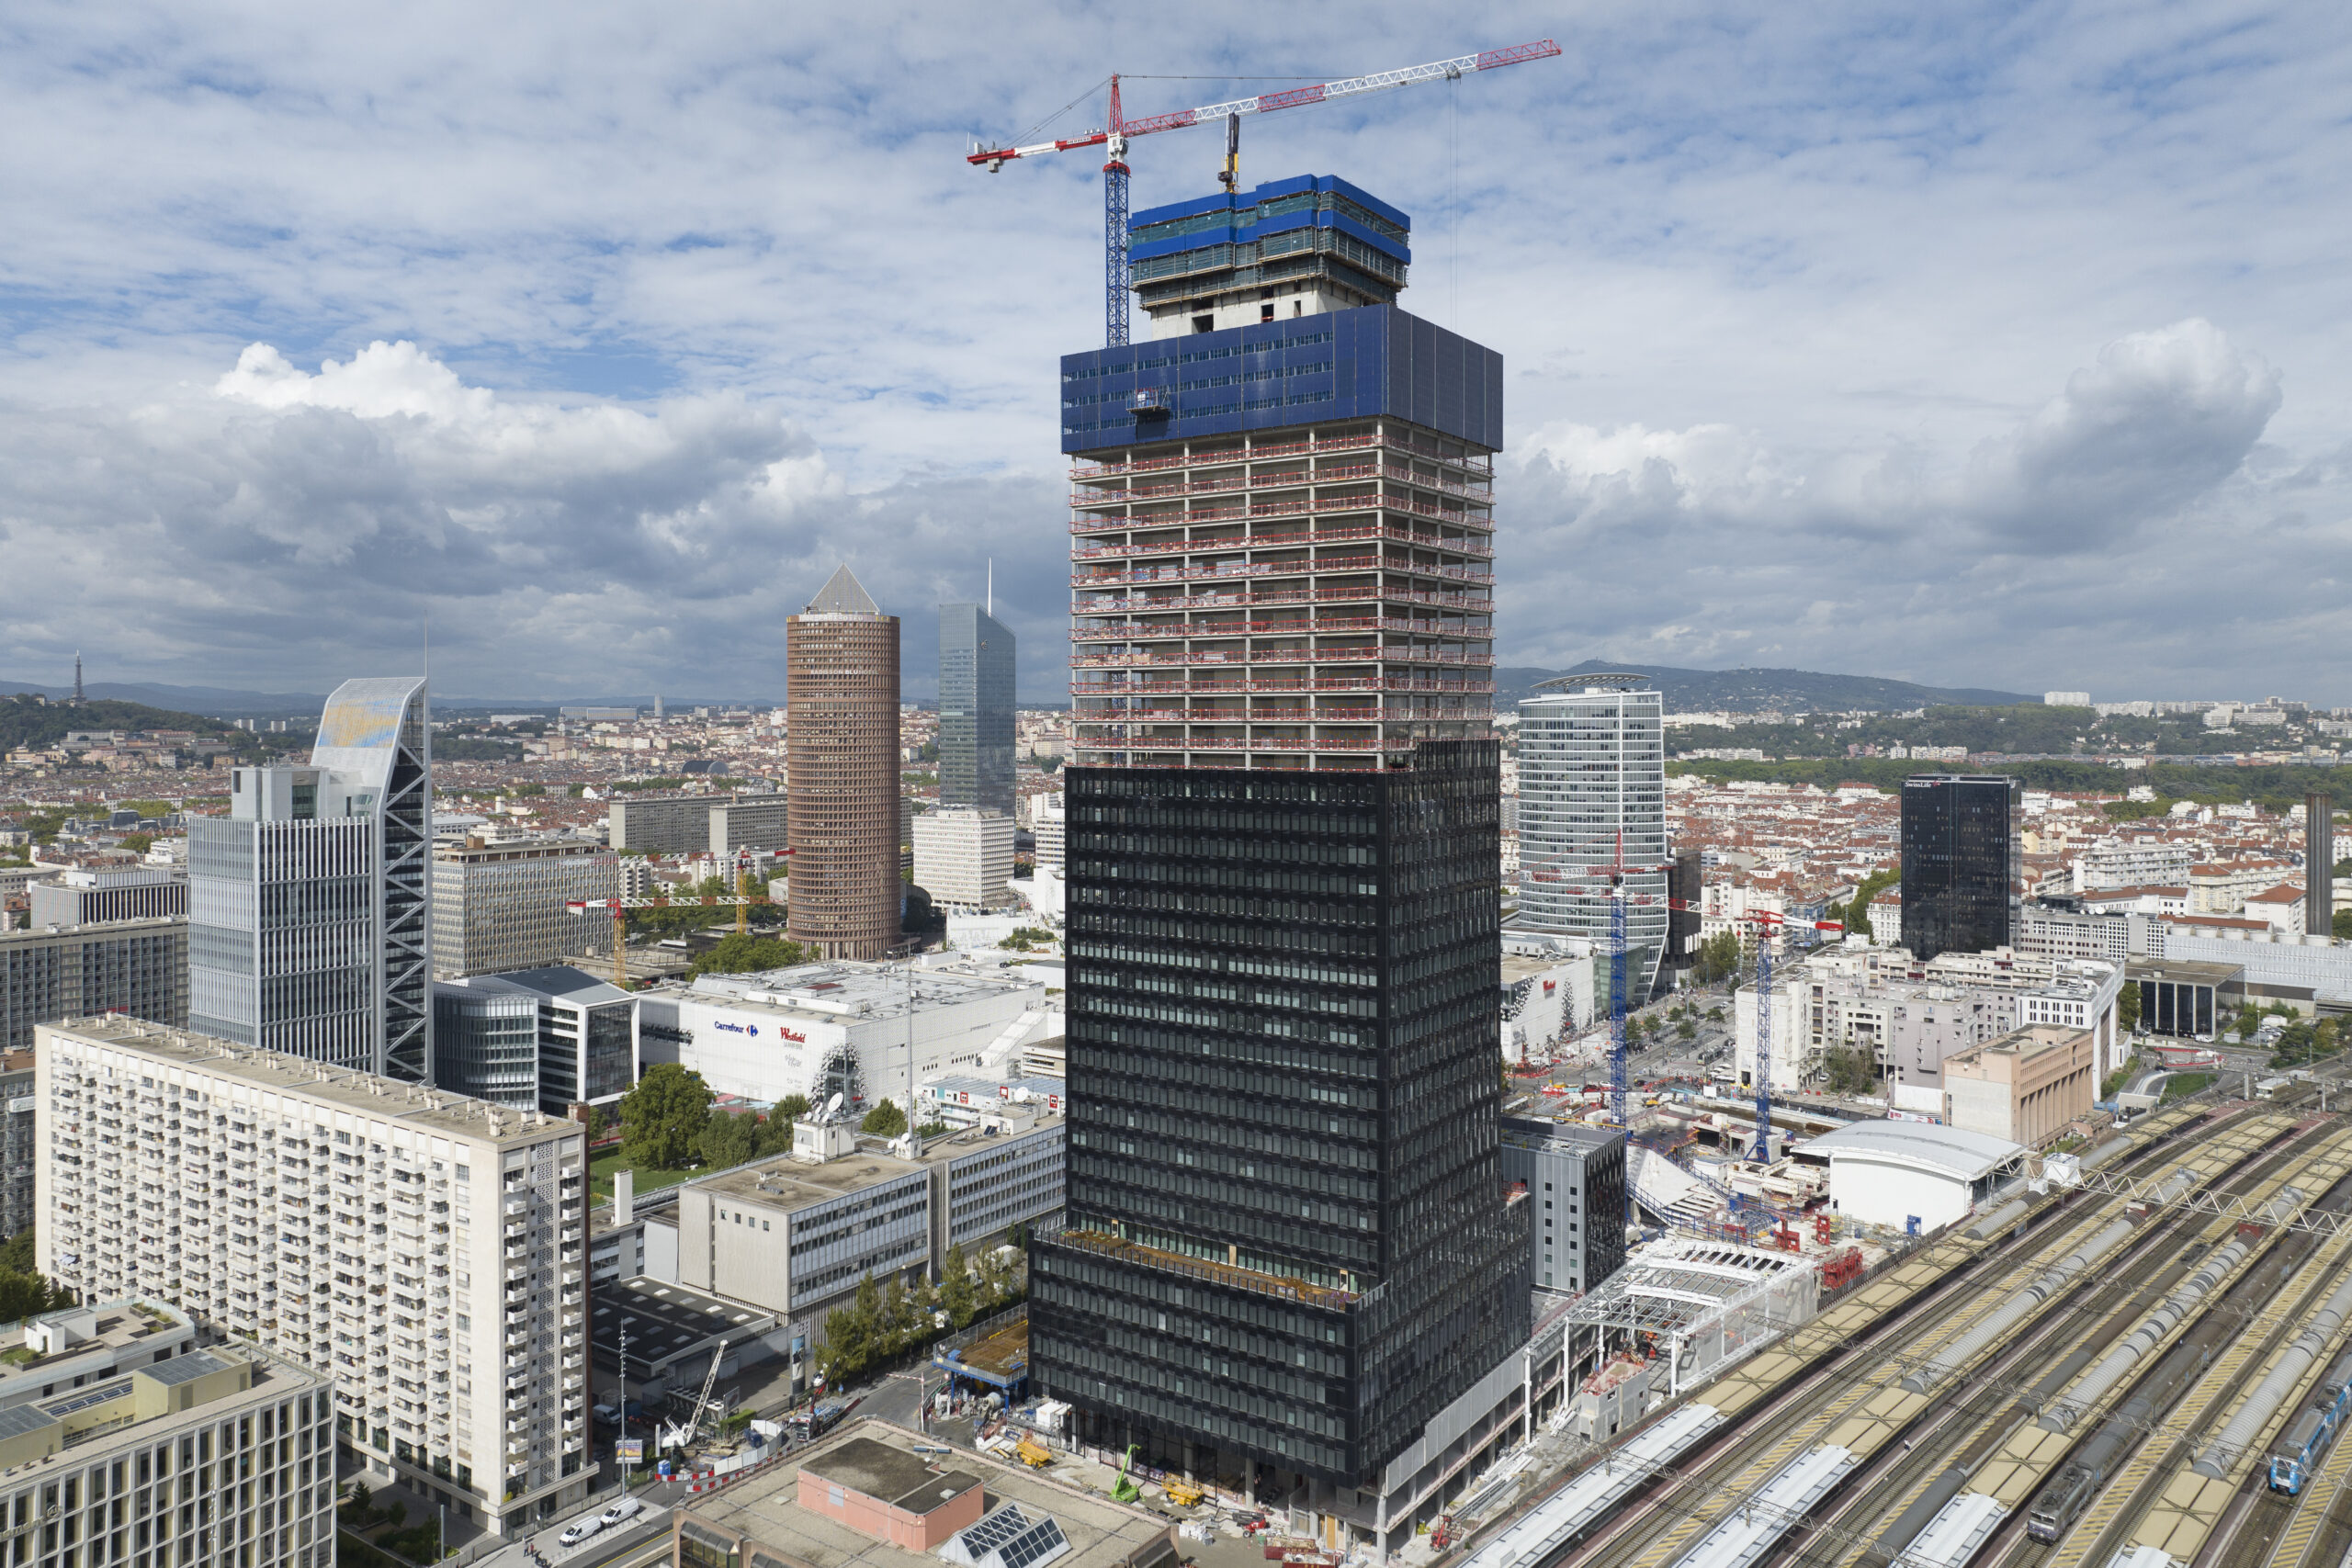 80 000 m² - Hauteur : 170m - 43 étages
- Délai de réalisation : 65 mois